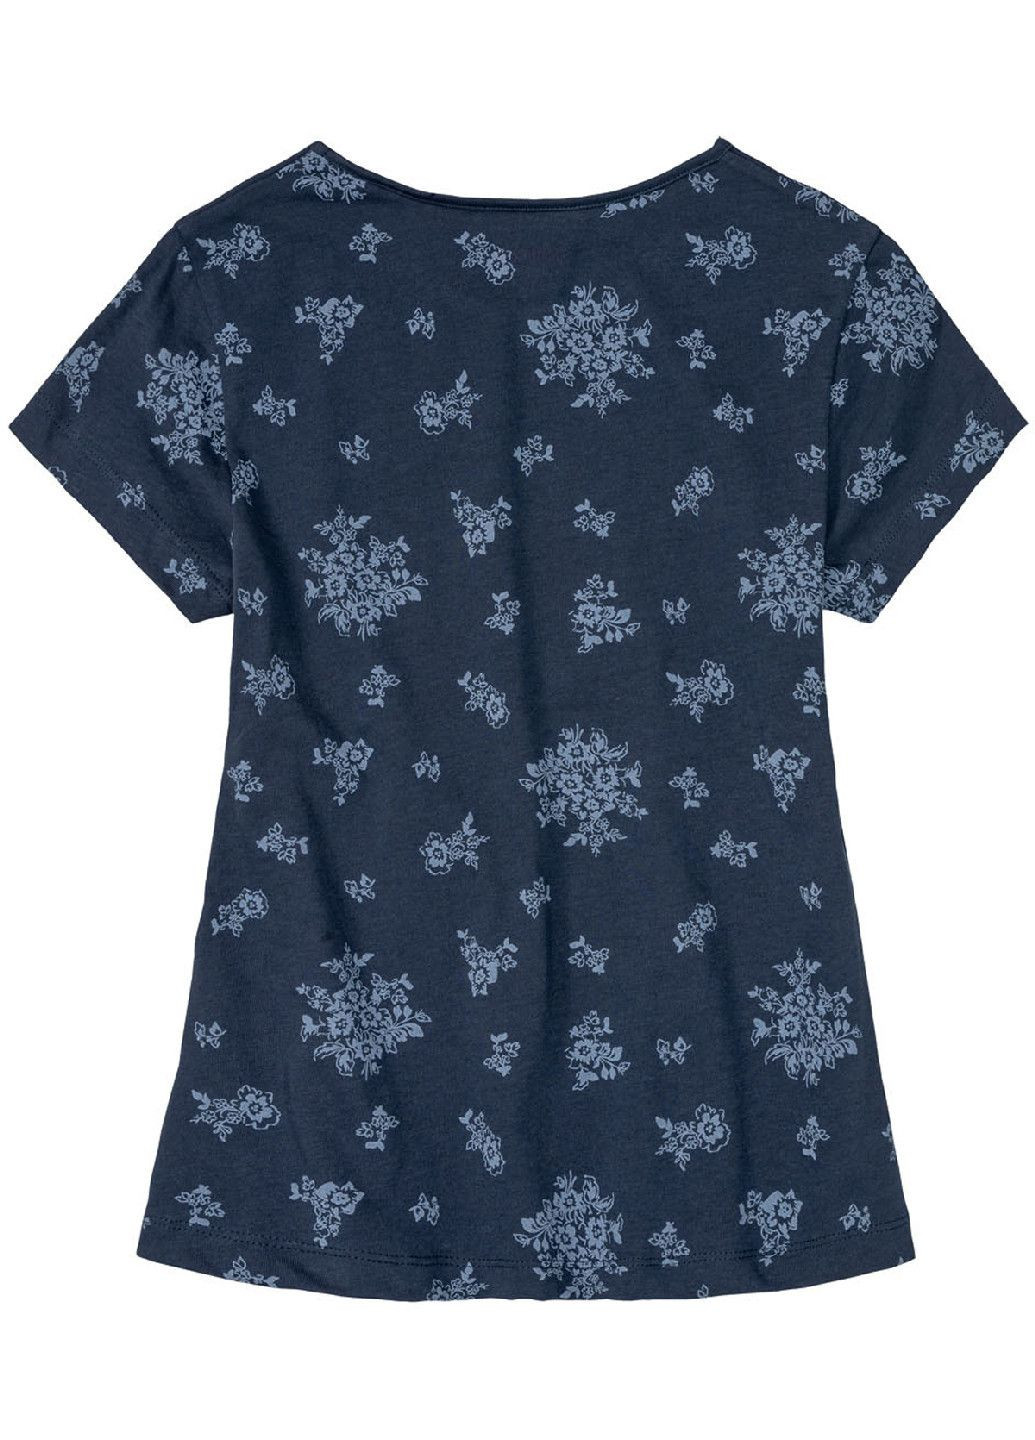 Темно-синя піжама (футболка і шорти) для дівчинки 382217 темно-синій Pepperts